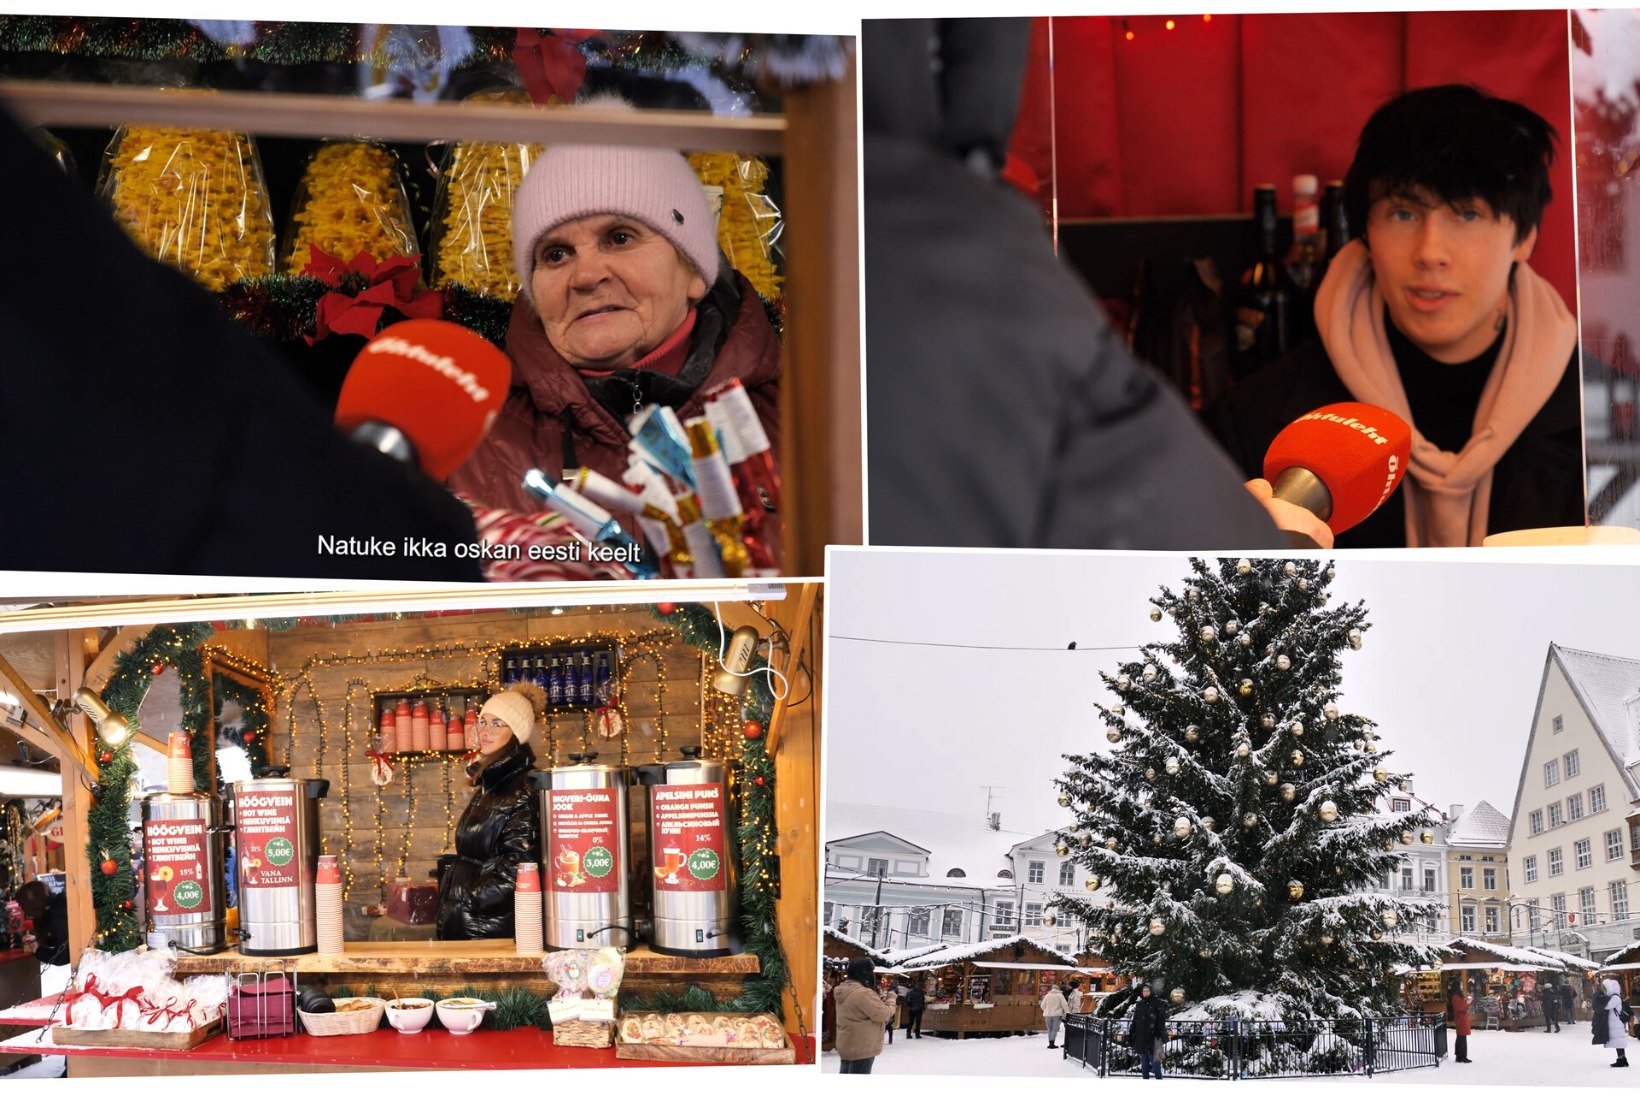 ÕL VIDEO | Tallinna jõuluturul teenivad leiba nii mitmed umbkeelsed müüjad kui ka „Rannamaja“ staar. Kuidas maitsevad praad ja glögi?